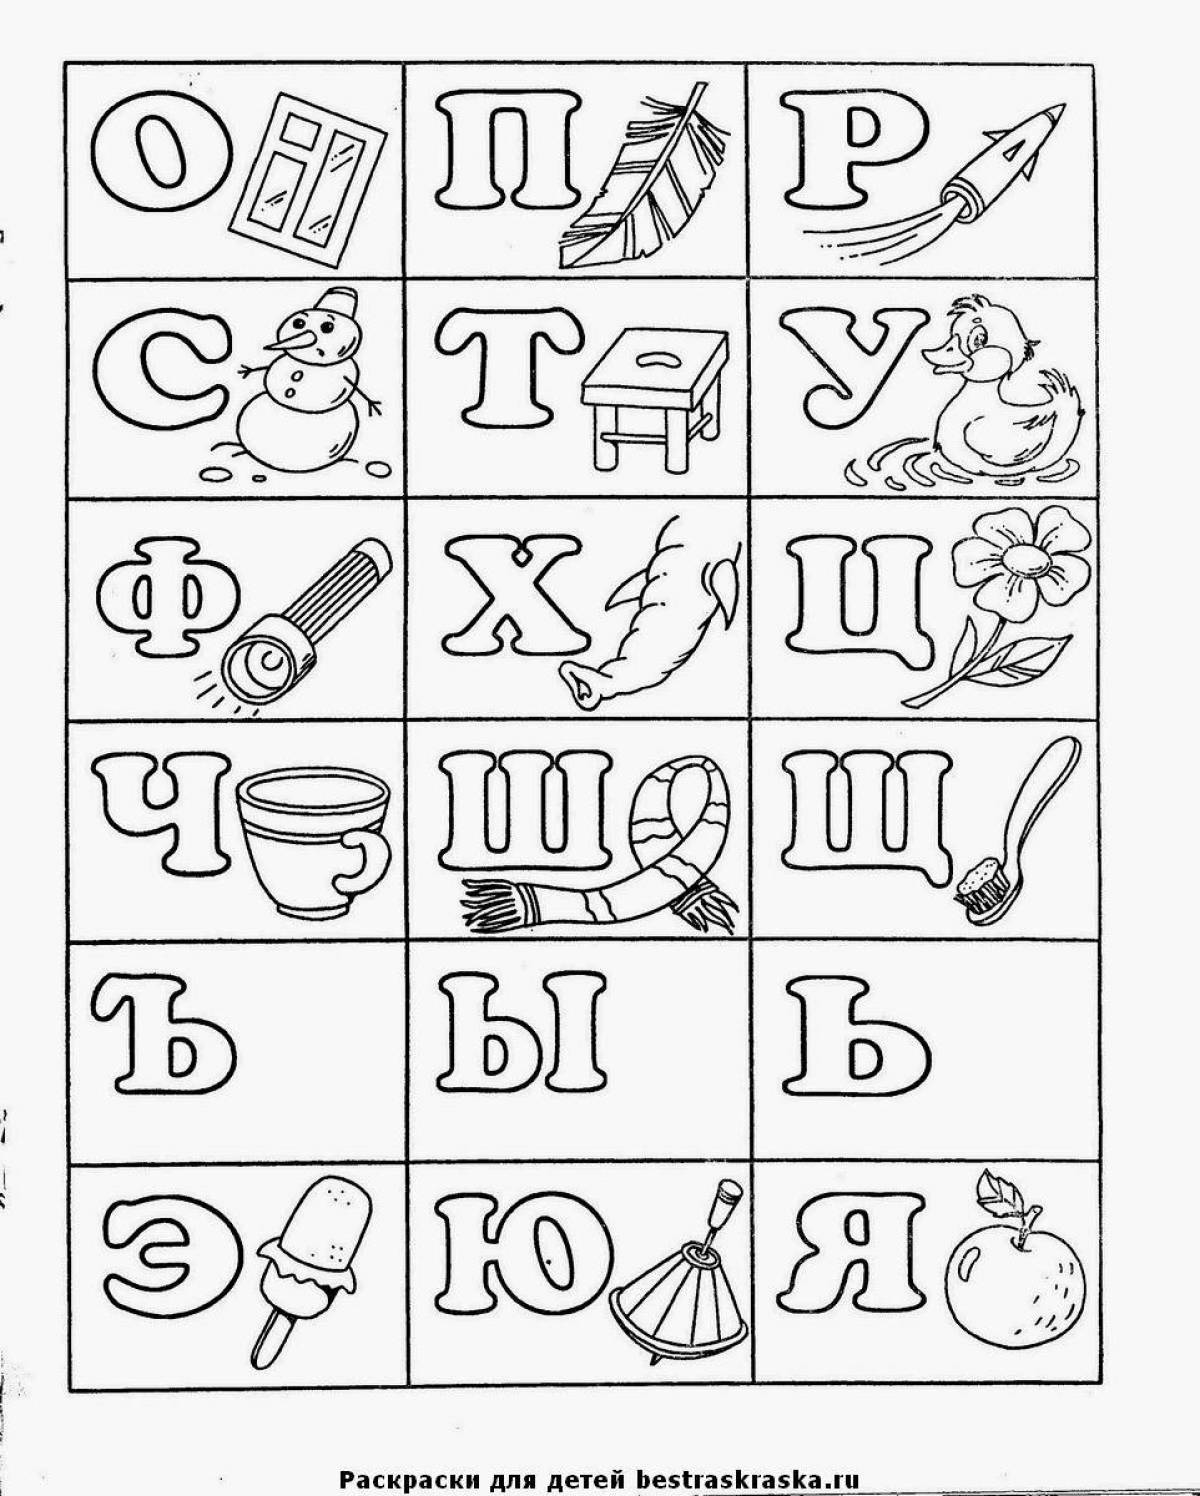 Colorful Kazakh alphabet page